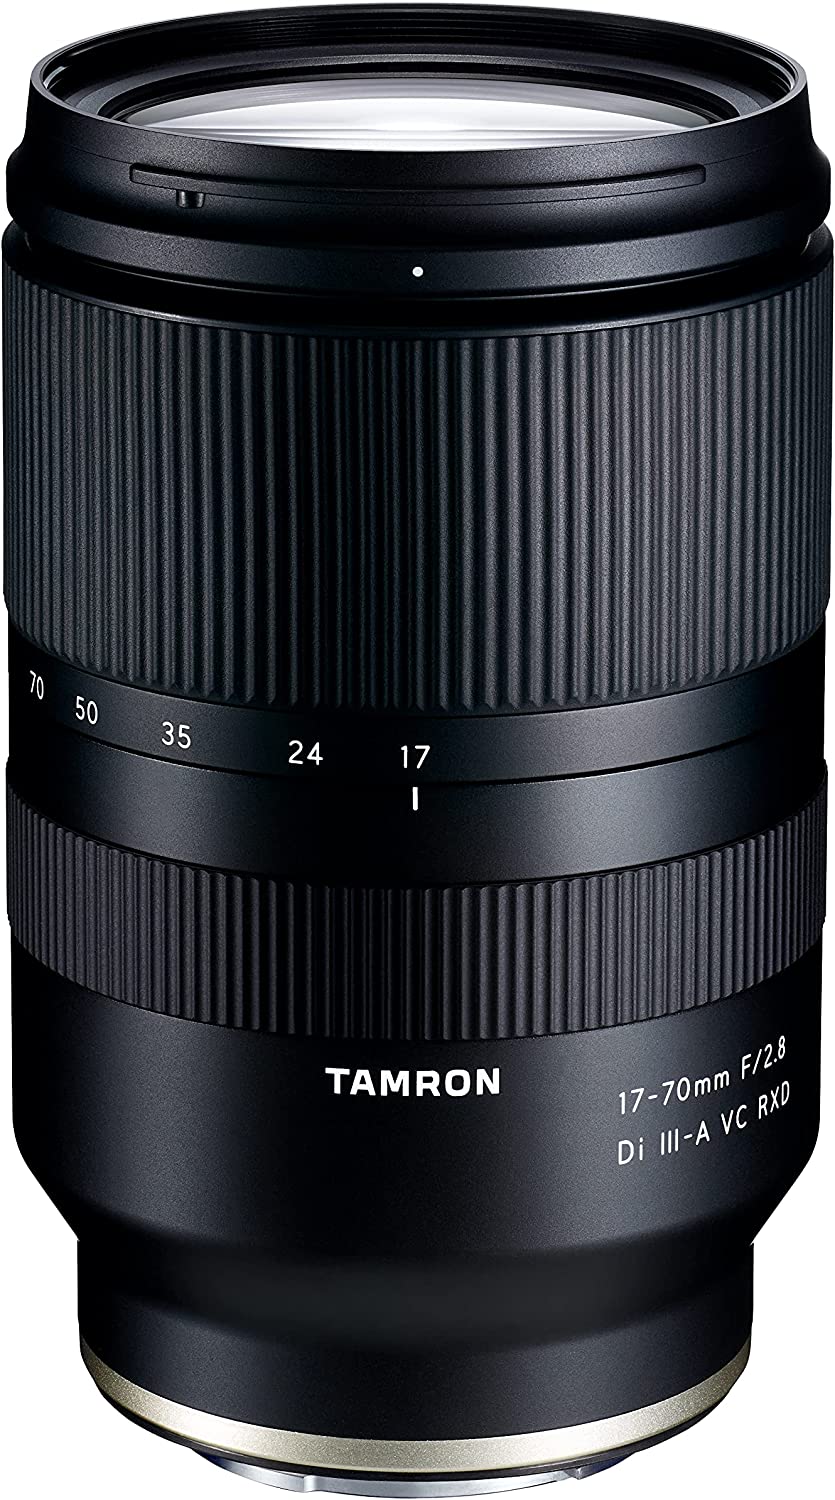 TAMRON 17-70mm F/2.8ブログレビュー、作例・Eマウント標準ズームレンズと比較紹介│旅カメラblog